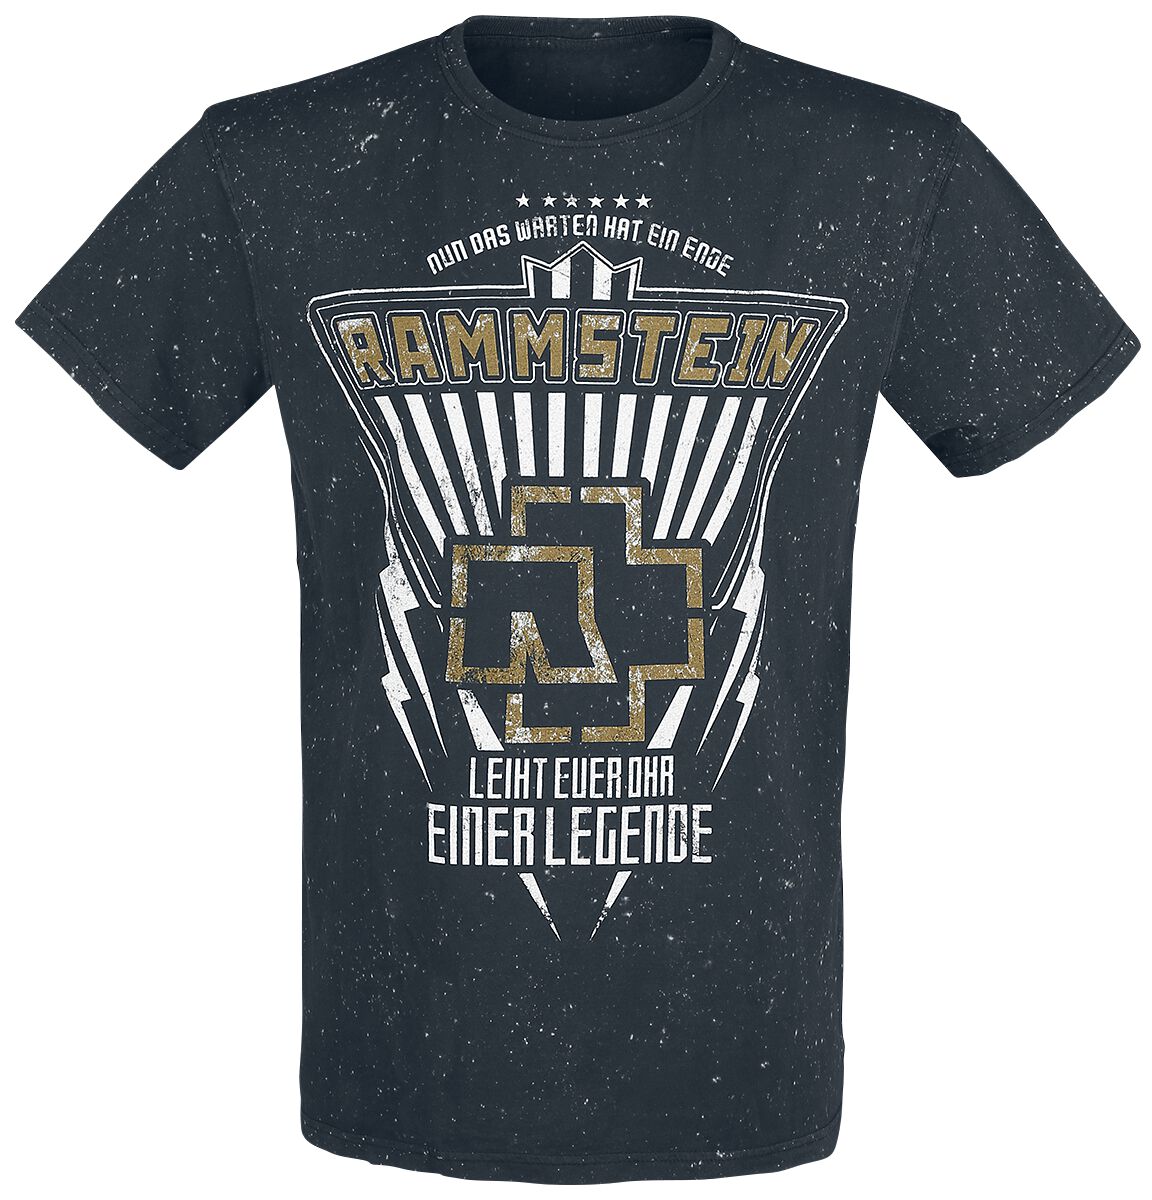 Rammstein T-Shirt - Legende - S bis 4XL - für Männer - Größe S - schwarz  - Lizenziertes Merchandise!